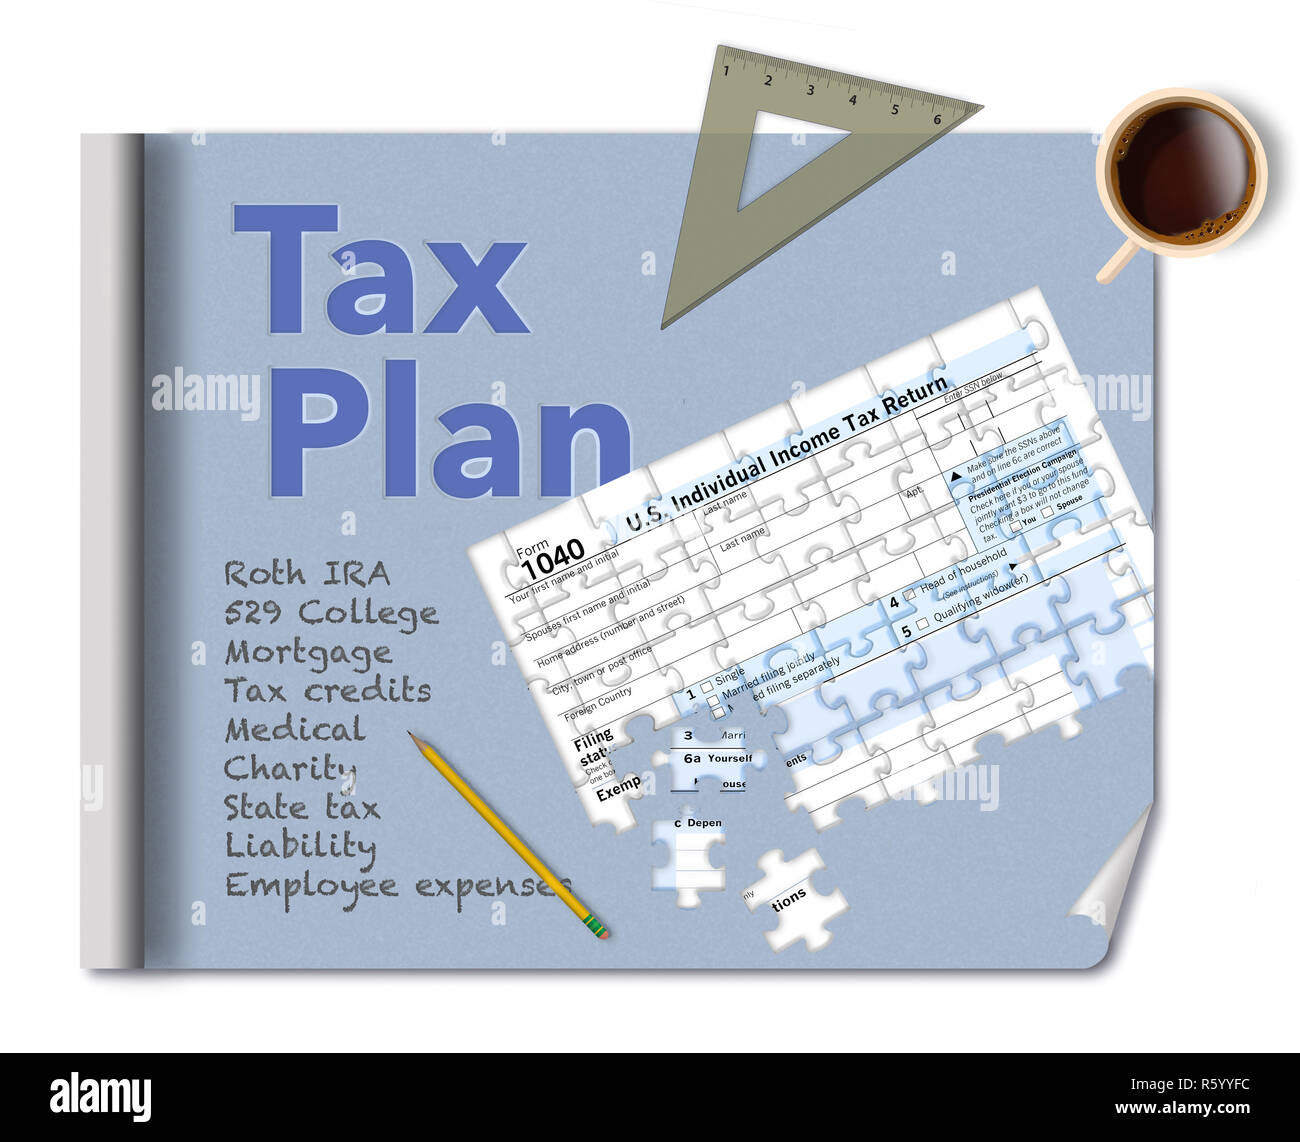 Ein bauplan und ein Steuerformular 1040, dass ist ein Puzzle machen diese Abbildung über Einkommensteuer Planung. Dies ist eine Abbildung. Stockfoto